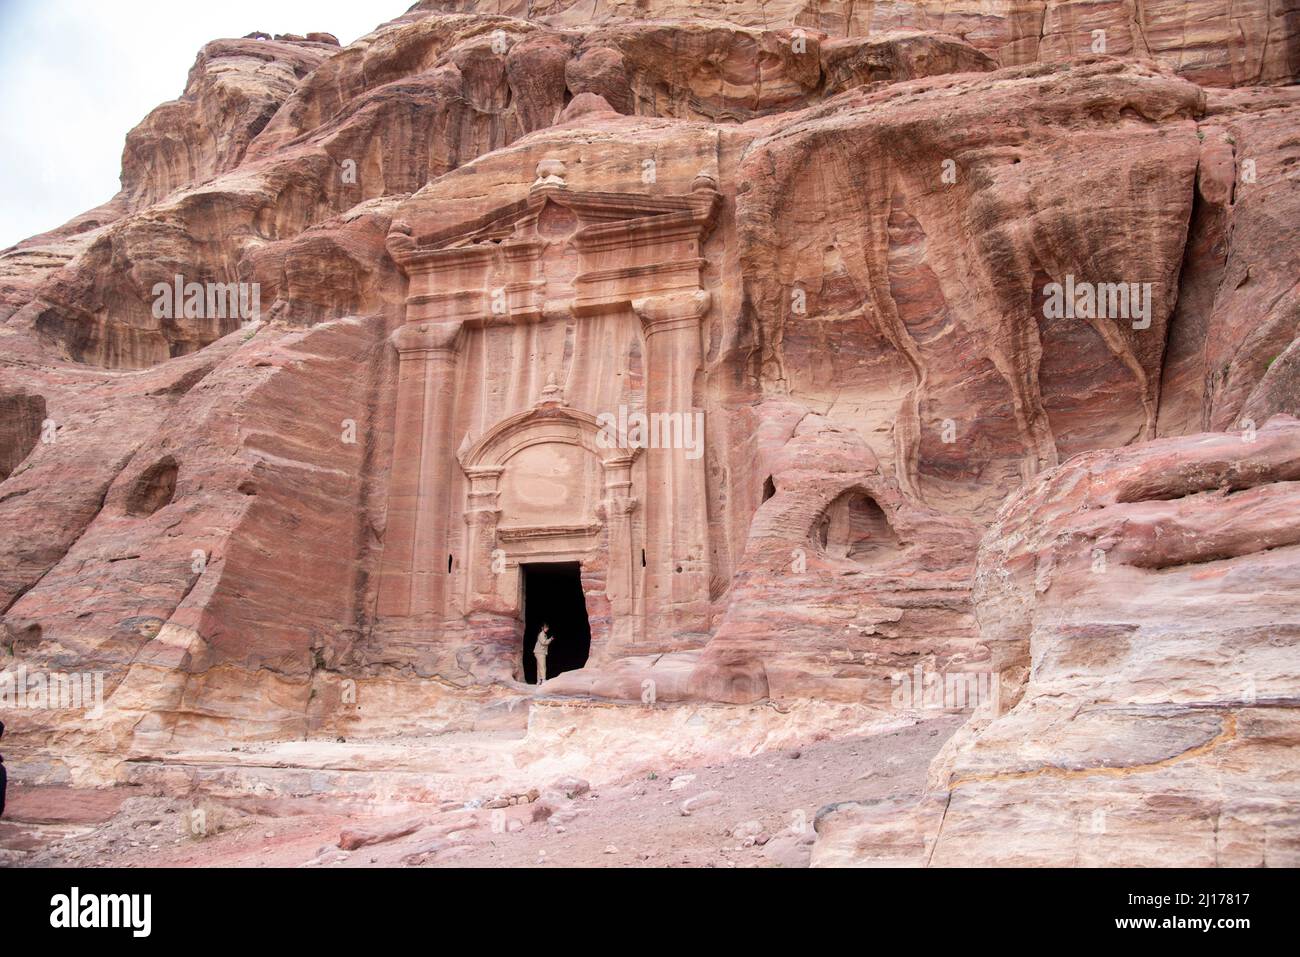 jordania petra 23-03-2022 visitando petra, la otra cara de petra, detrás de la puerta del tesoro, hay un mundo desconocido de petr Stock Photo